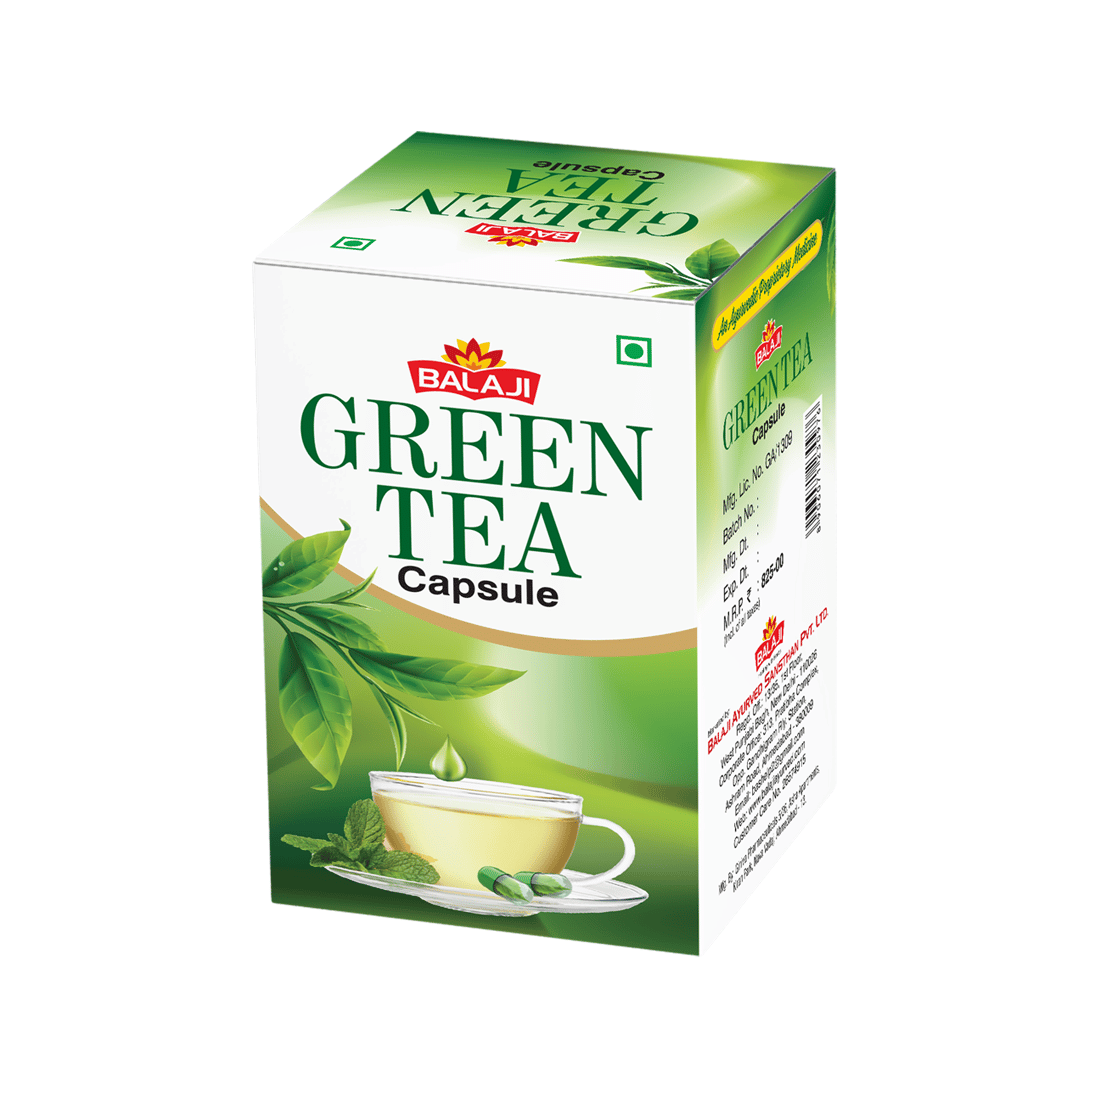 Buy Green Tea 60 capsule Online at Best Price in India